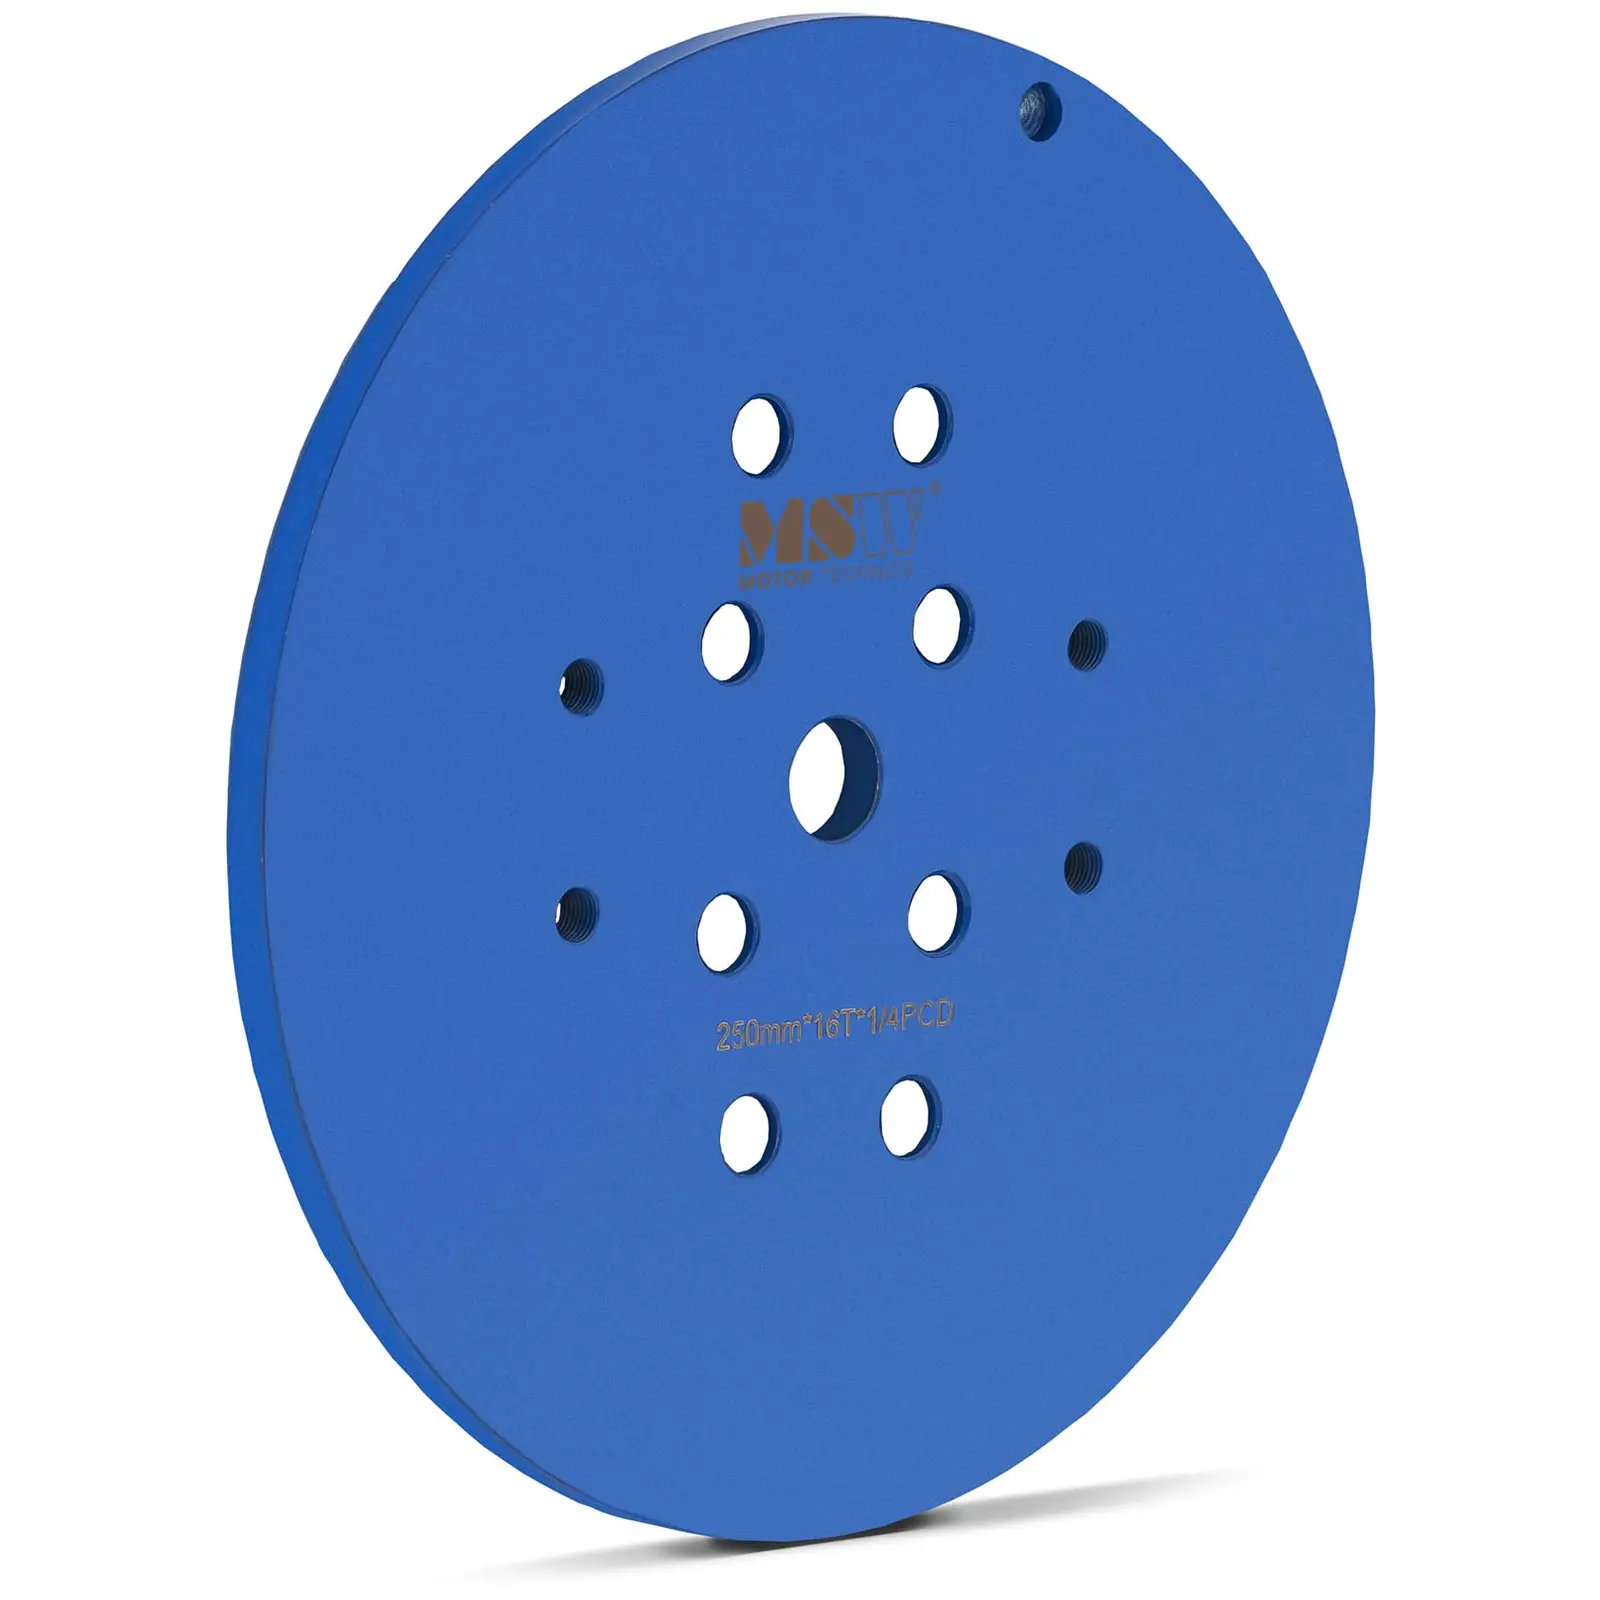 Lijadora de disco - diámetro: 250 mm - 16 segmentos de lijado